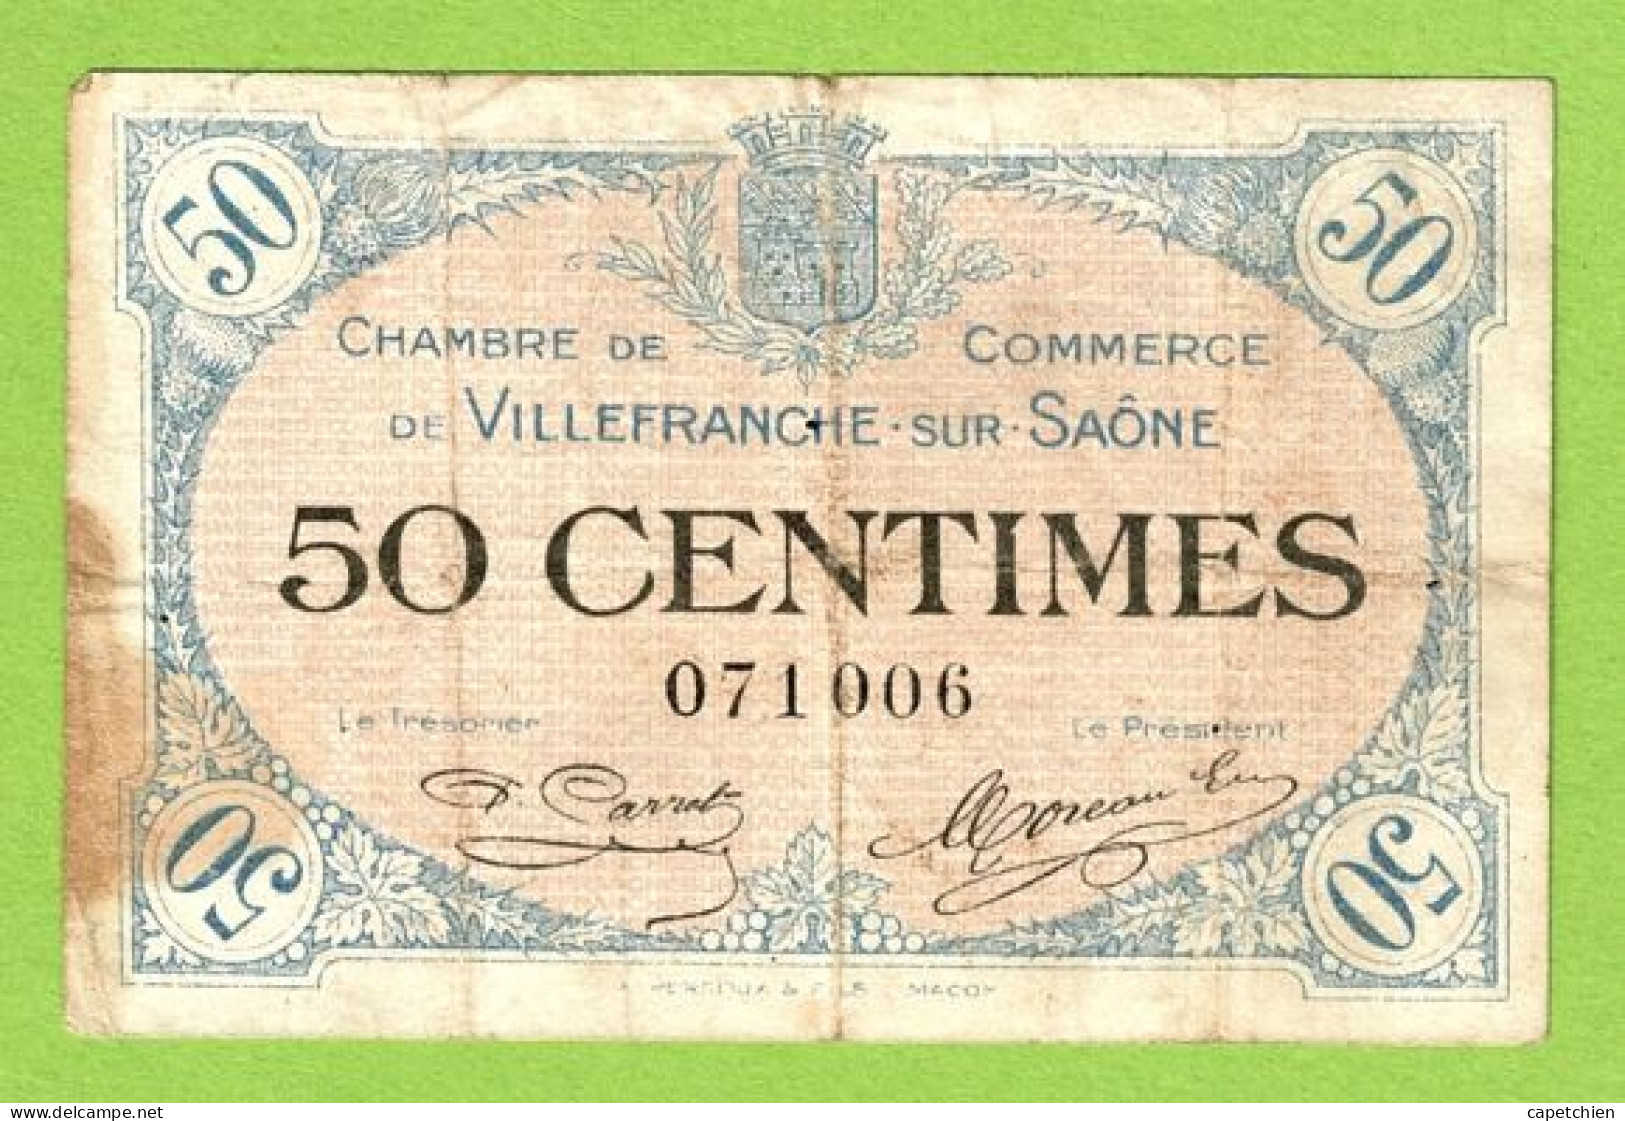 FRANCE / VILLEFRANCHE SUR SAÔNE / 50 CENTIMES / 1er DECEMBRE 1915 / N° 071006 - Handelskammer